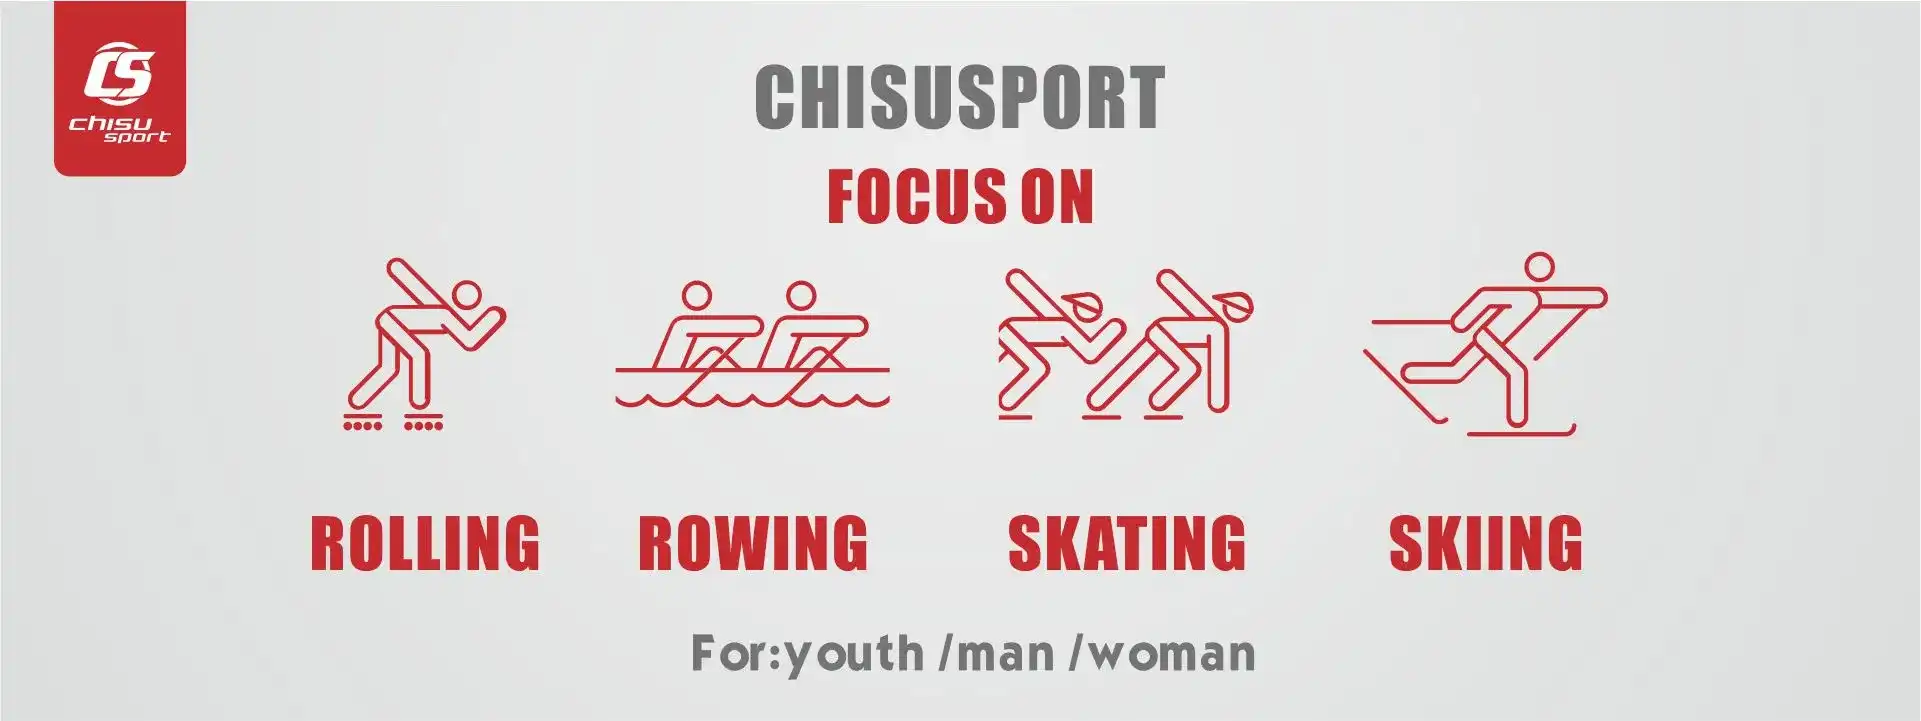 chisusport focuson roller rowing skating skiing suit custom & oem